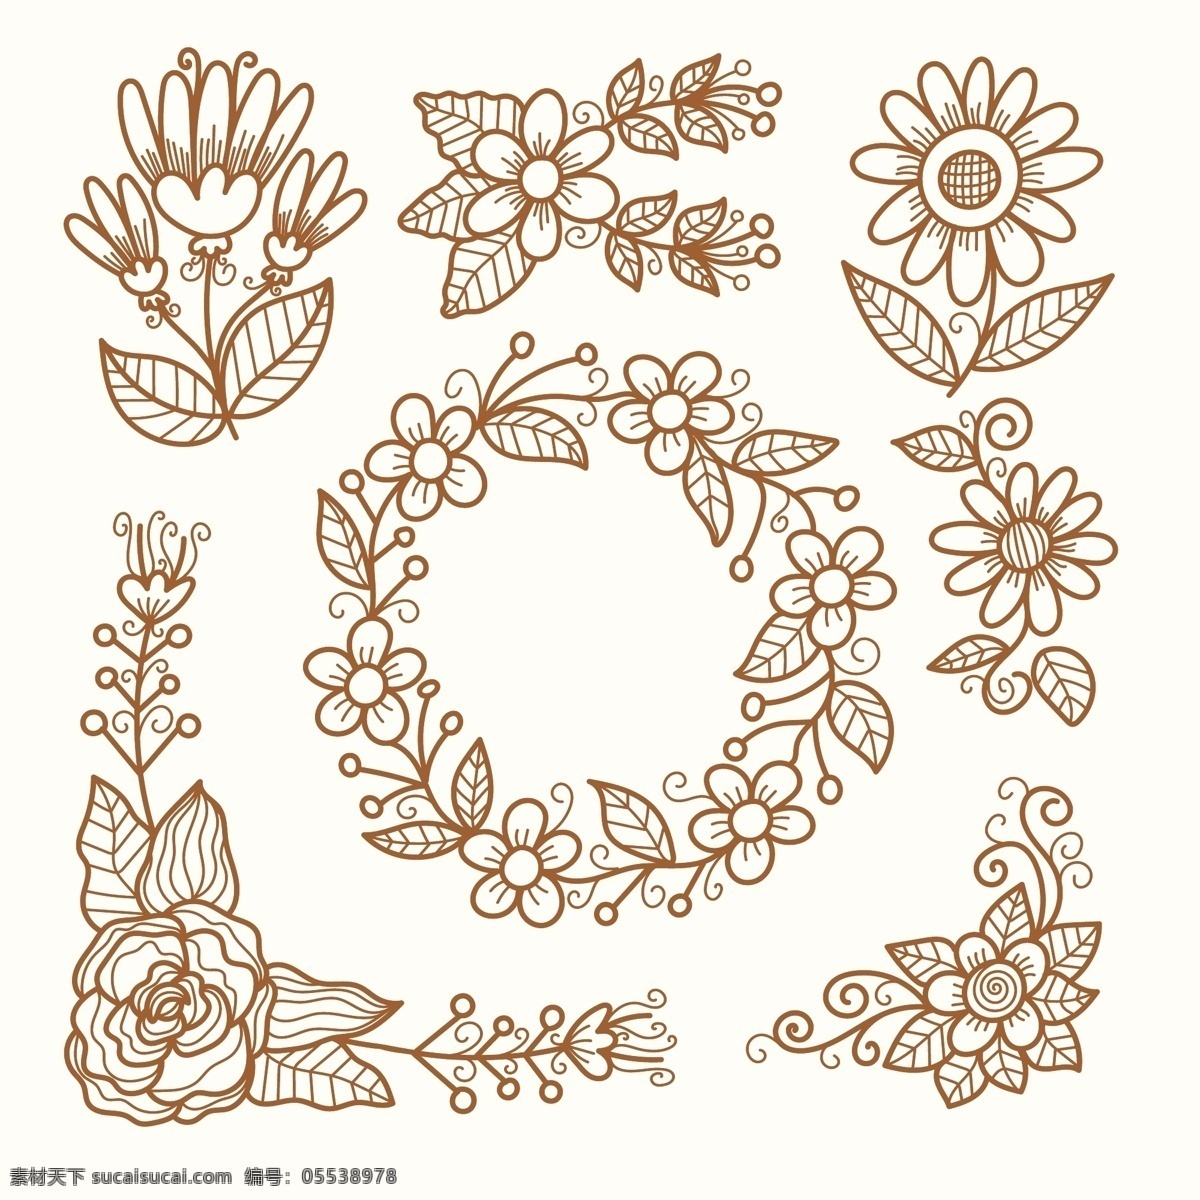 手绘 素描 风格 花卉 元素 线描 线条 花圈 自然 叶